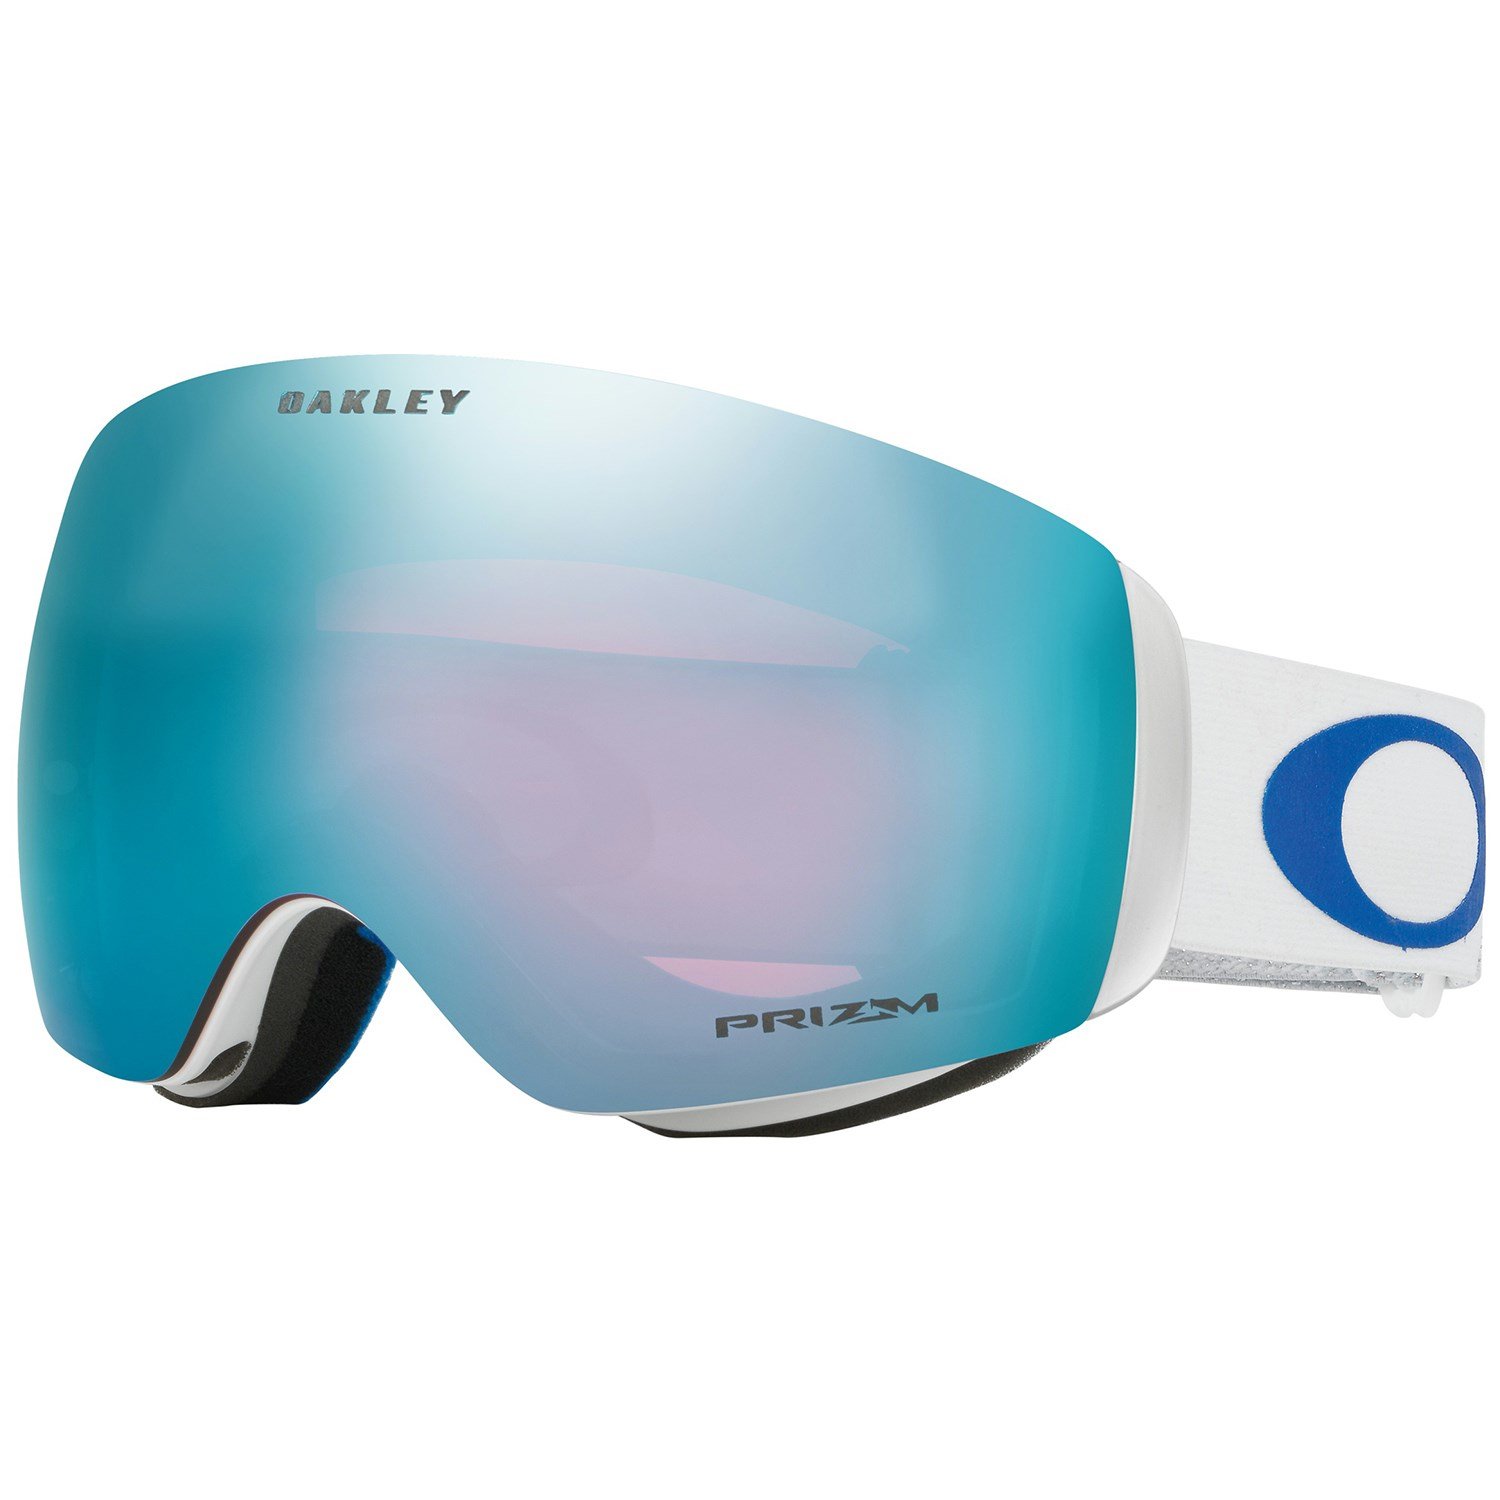 lindsey vonn ski goggles